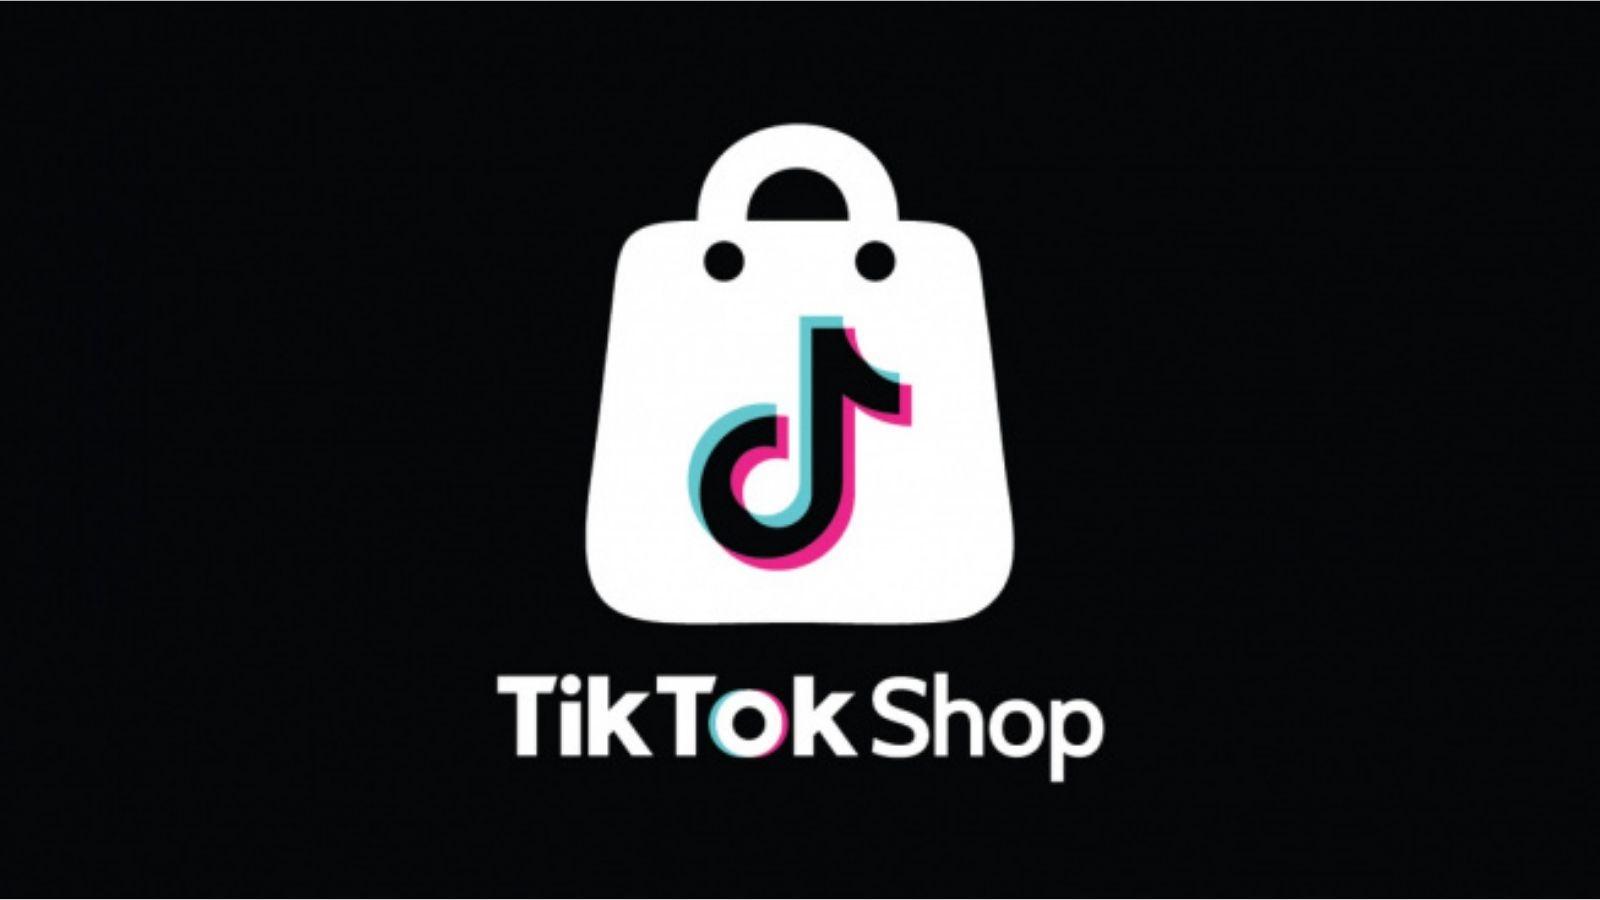 TikTok Shop platformuyla ilgili dikkat çeken bir gelişme oldu. TikTok Shop uygulaması, İngiltere'de ikinci el lüks moda kategorisine ev sahipliği yaptı.